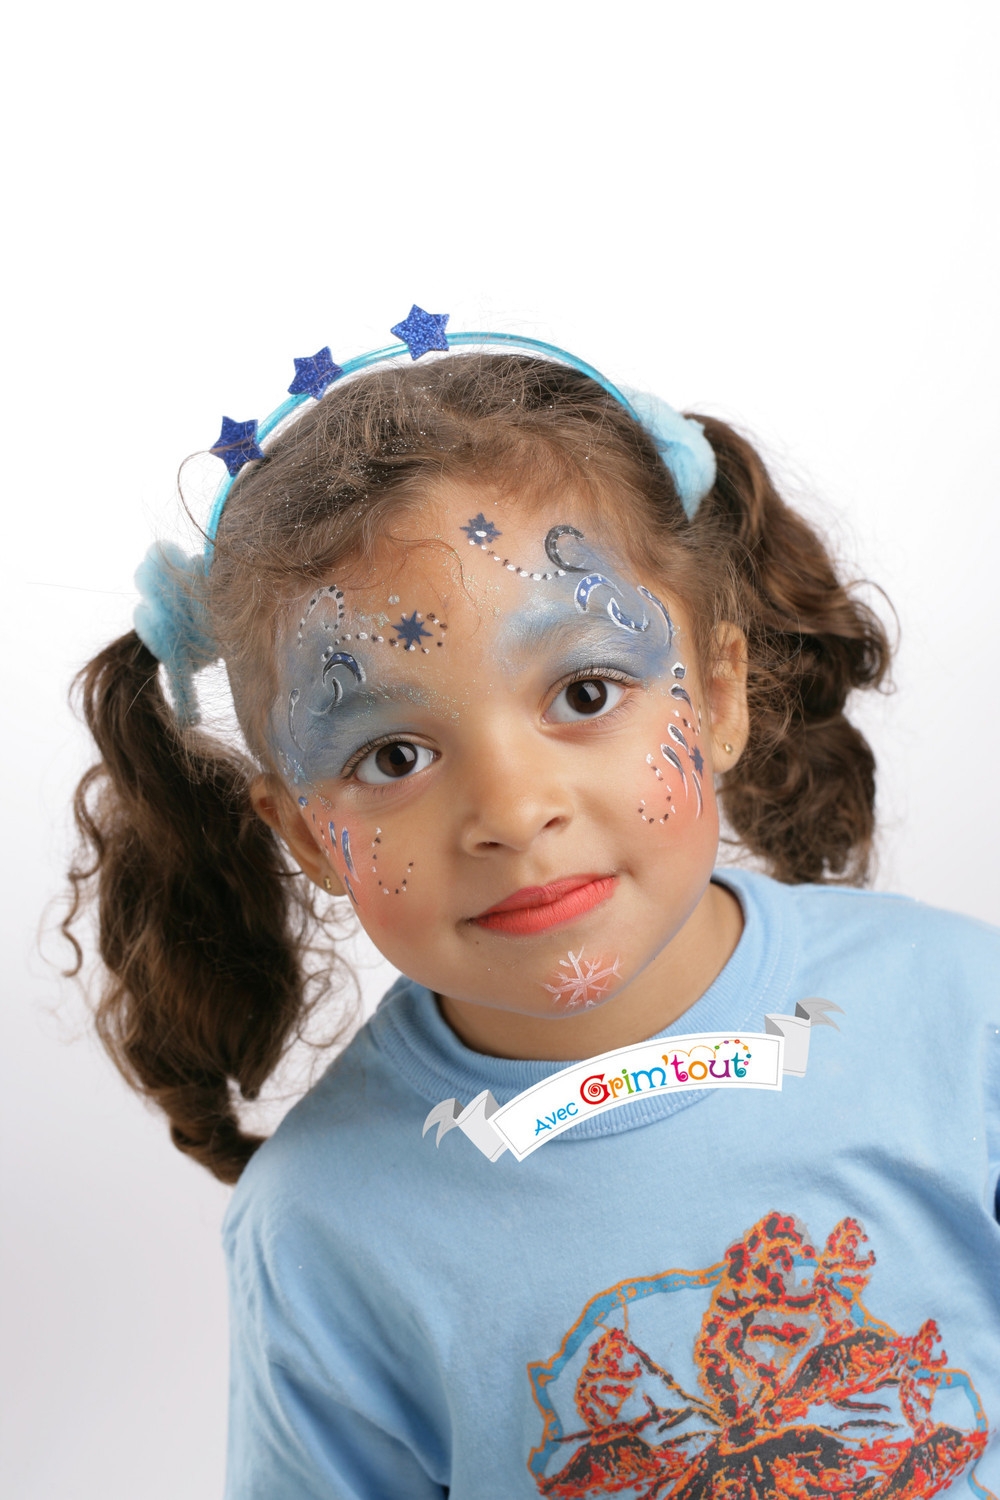 Maquillage de petite princesse - Tutoriel de maquillage des enfants 